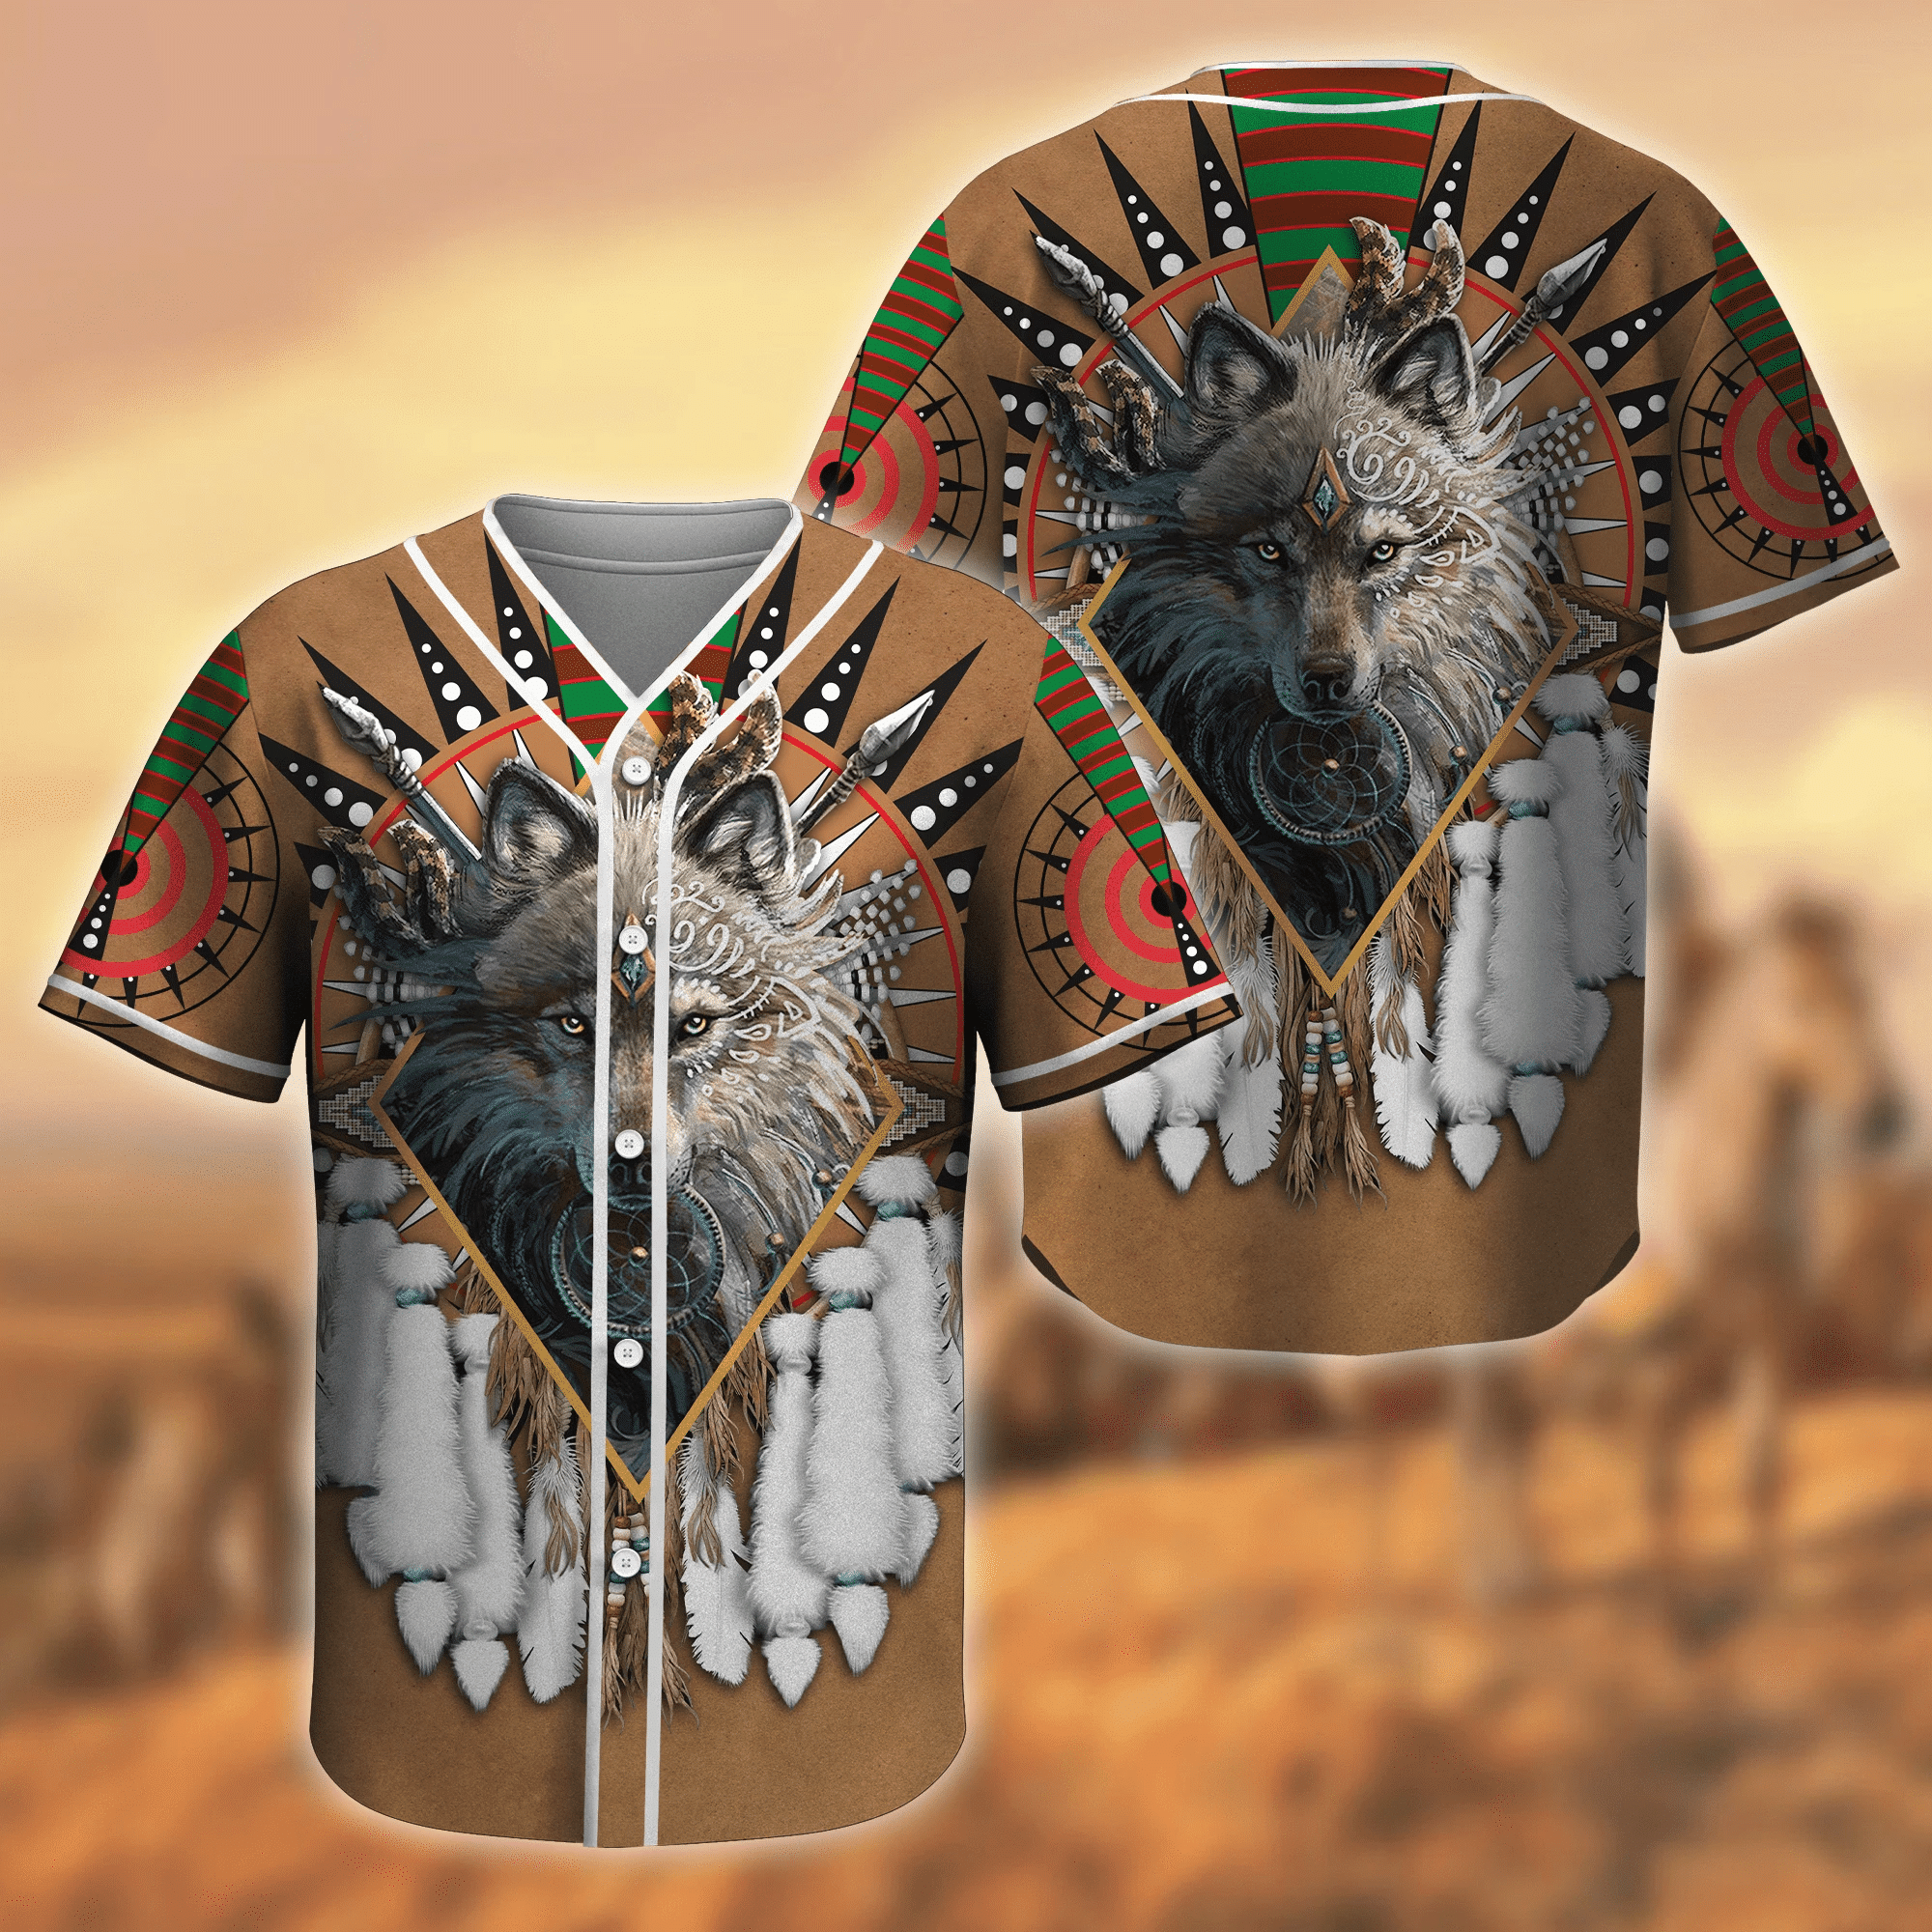 Native American Wolf Art Baseball Jersey, Unisex Jersey Shirt for Men Women